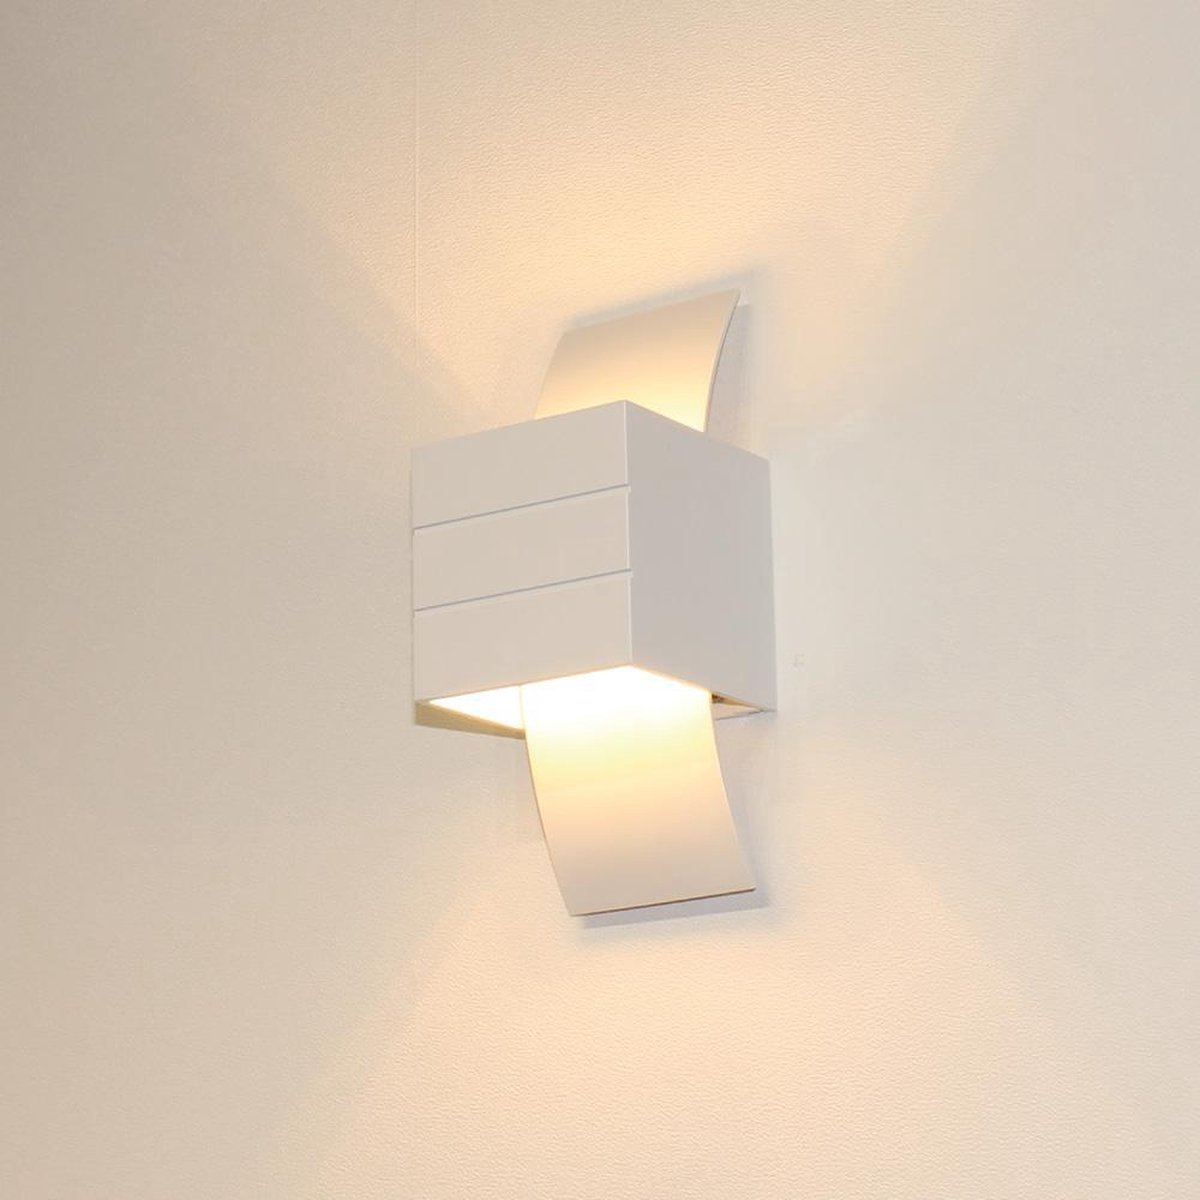 Wandlamp Gyhum Wit - 1x G9 LED 3,5W 2700K 350lm - IP20 - Dimbaar > wandlamp wit | wandlamp binnen wit | led lamp wit | sfeer lamp wit